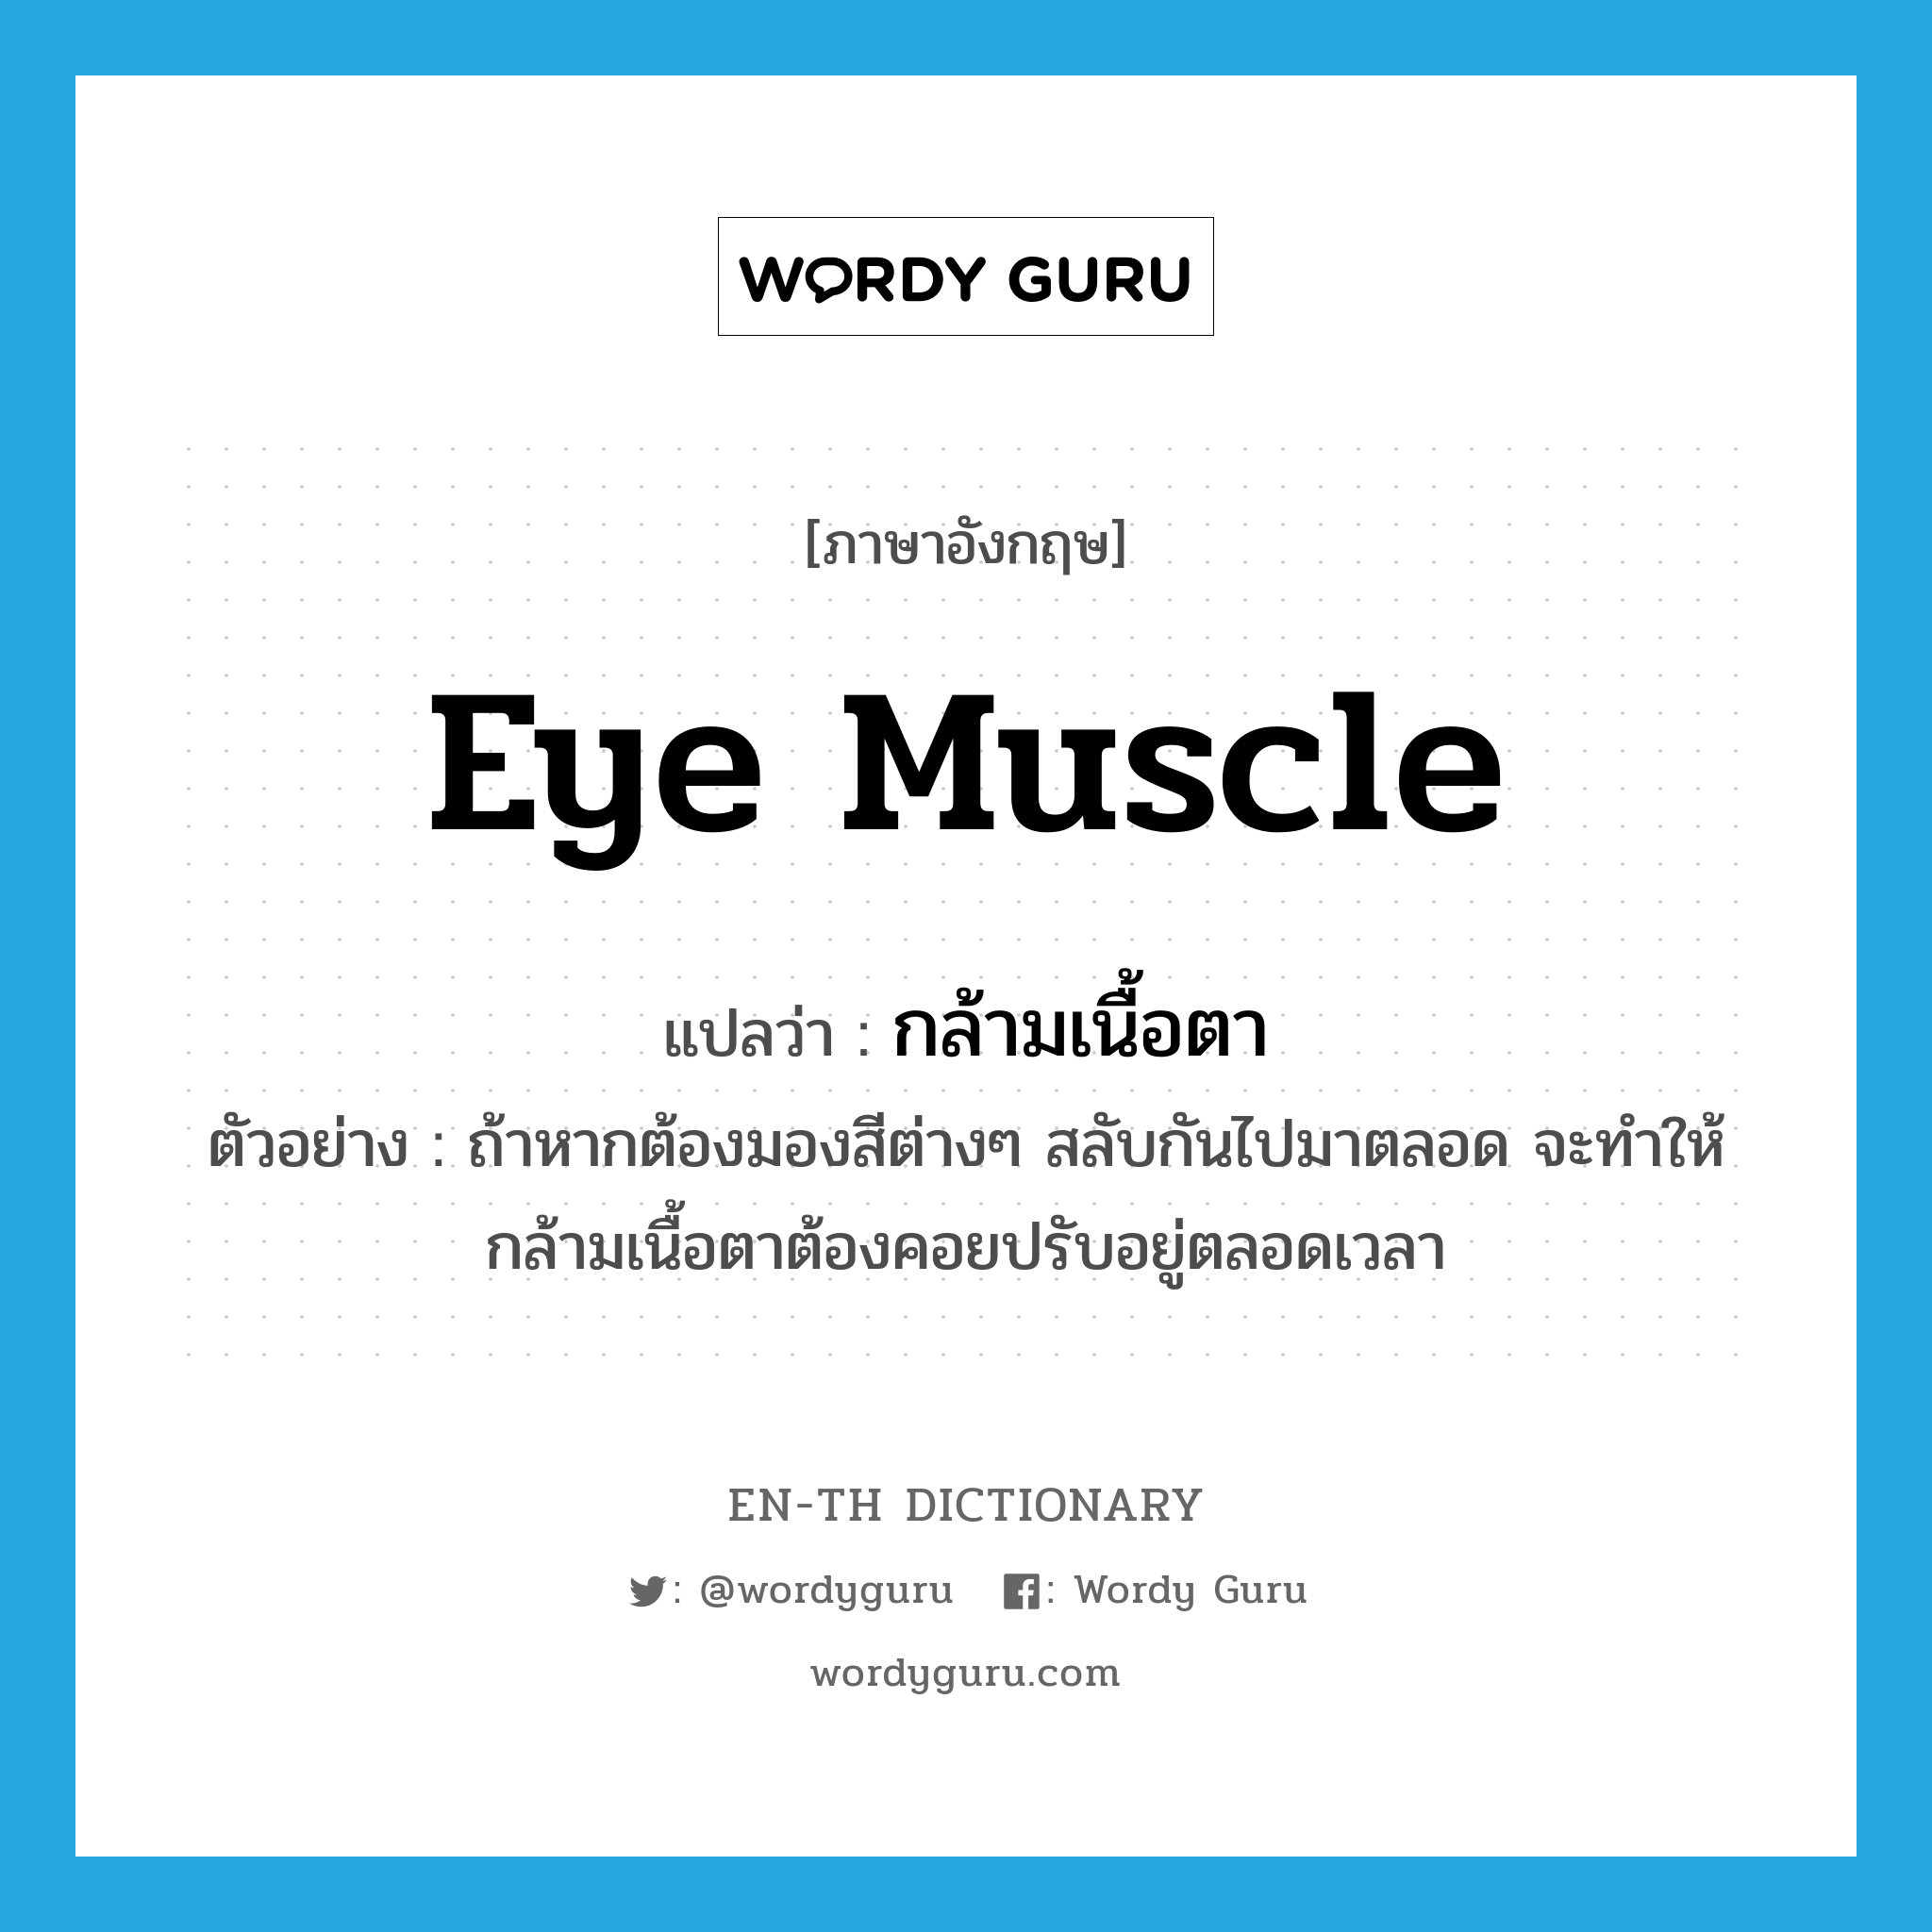 eye muscle แปลว่า?, คำศัพท์ภาษาอังกฤษ eye muscle แปลว่า กล้ามเนื้อตา ประเภท N ตัวอย่าง ถ้าหากต้องมองสีต่างๆ สลับกันไปมาตลอด จะทำให้กล้ามเนื้อตาต้องคอยปรับอยู่ตลอดเวลา หมวด N